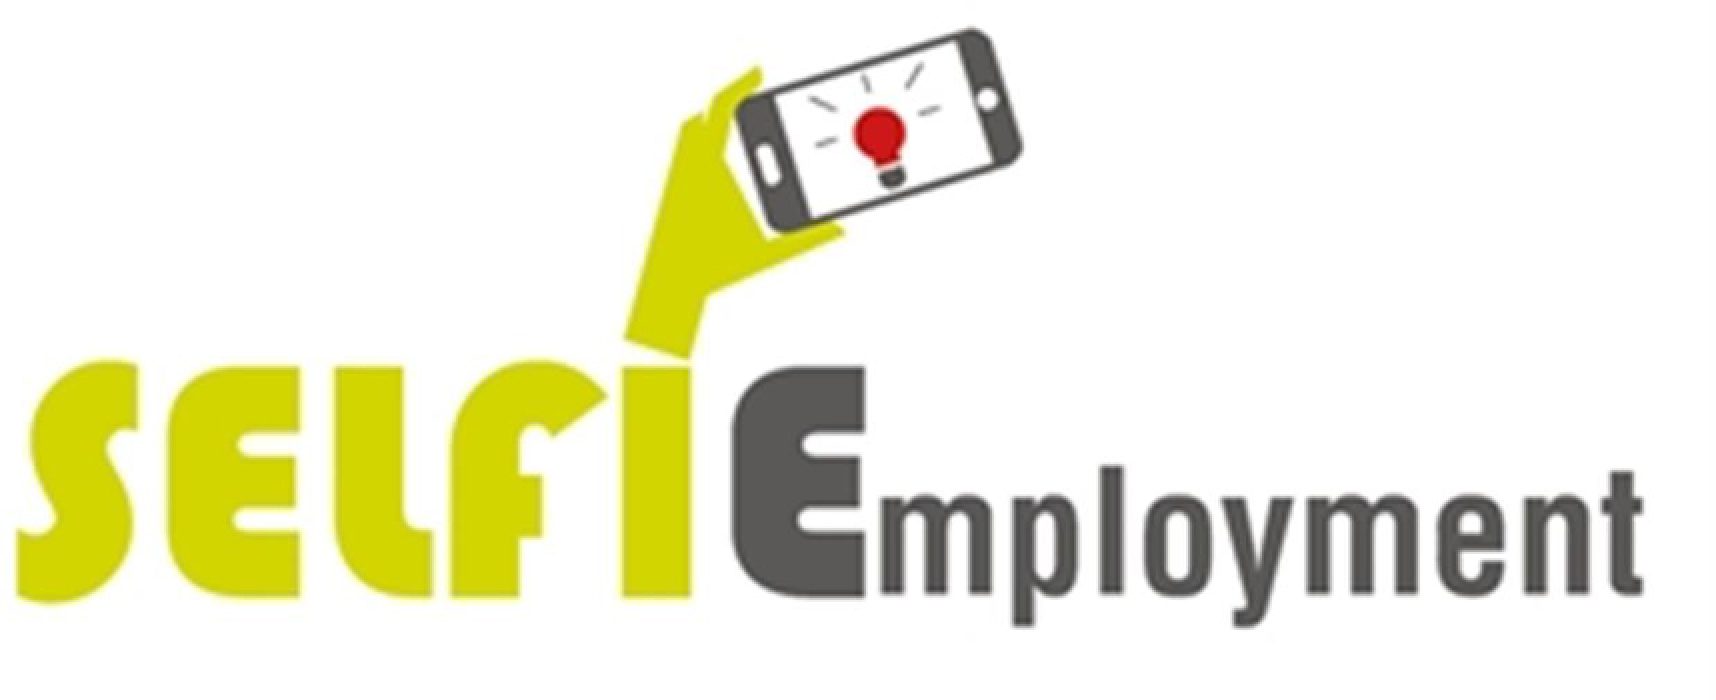 Lavoro, “Selfiemployment” sbarca a Bisceglie: finanziamenti fino a 25mila euro per i giovani